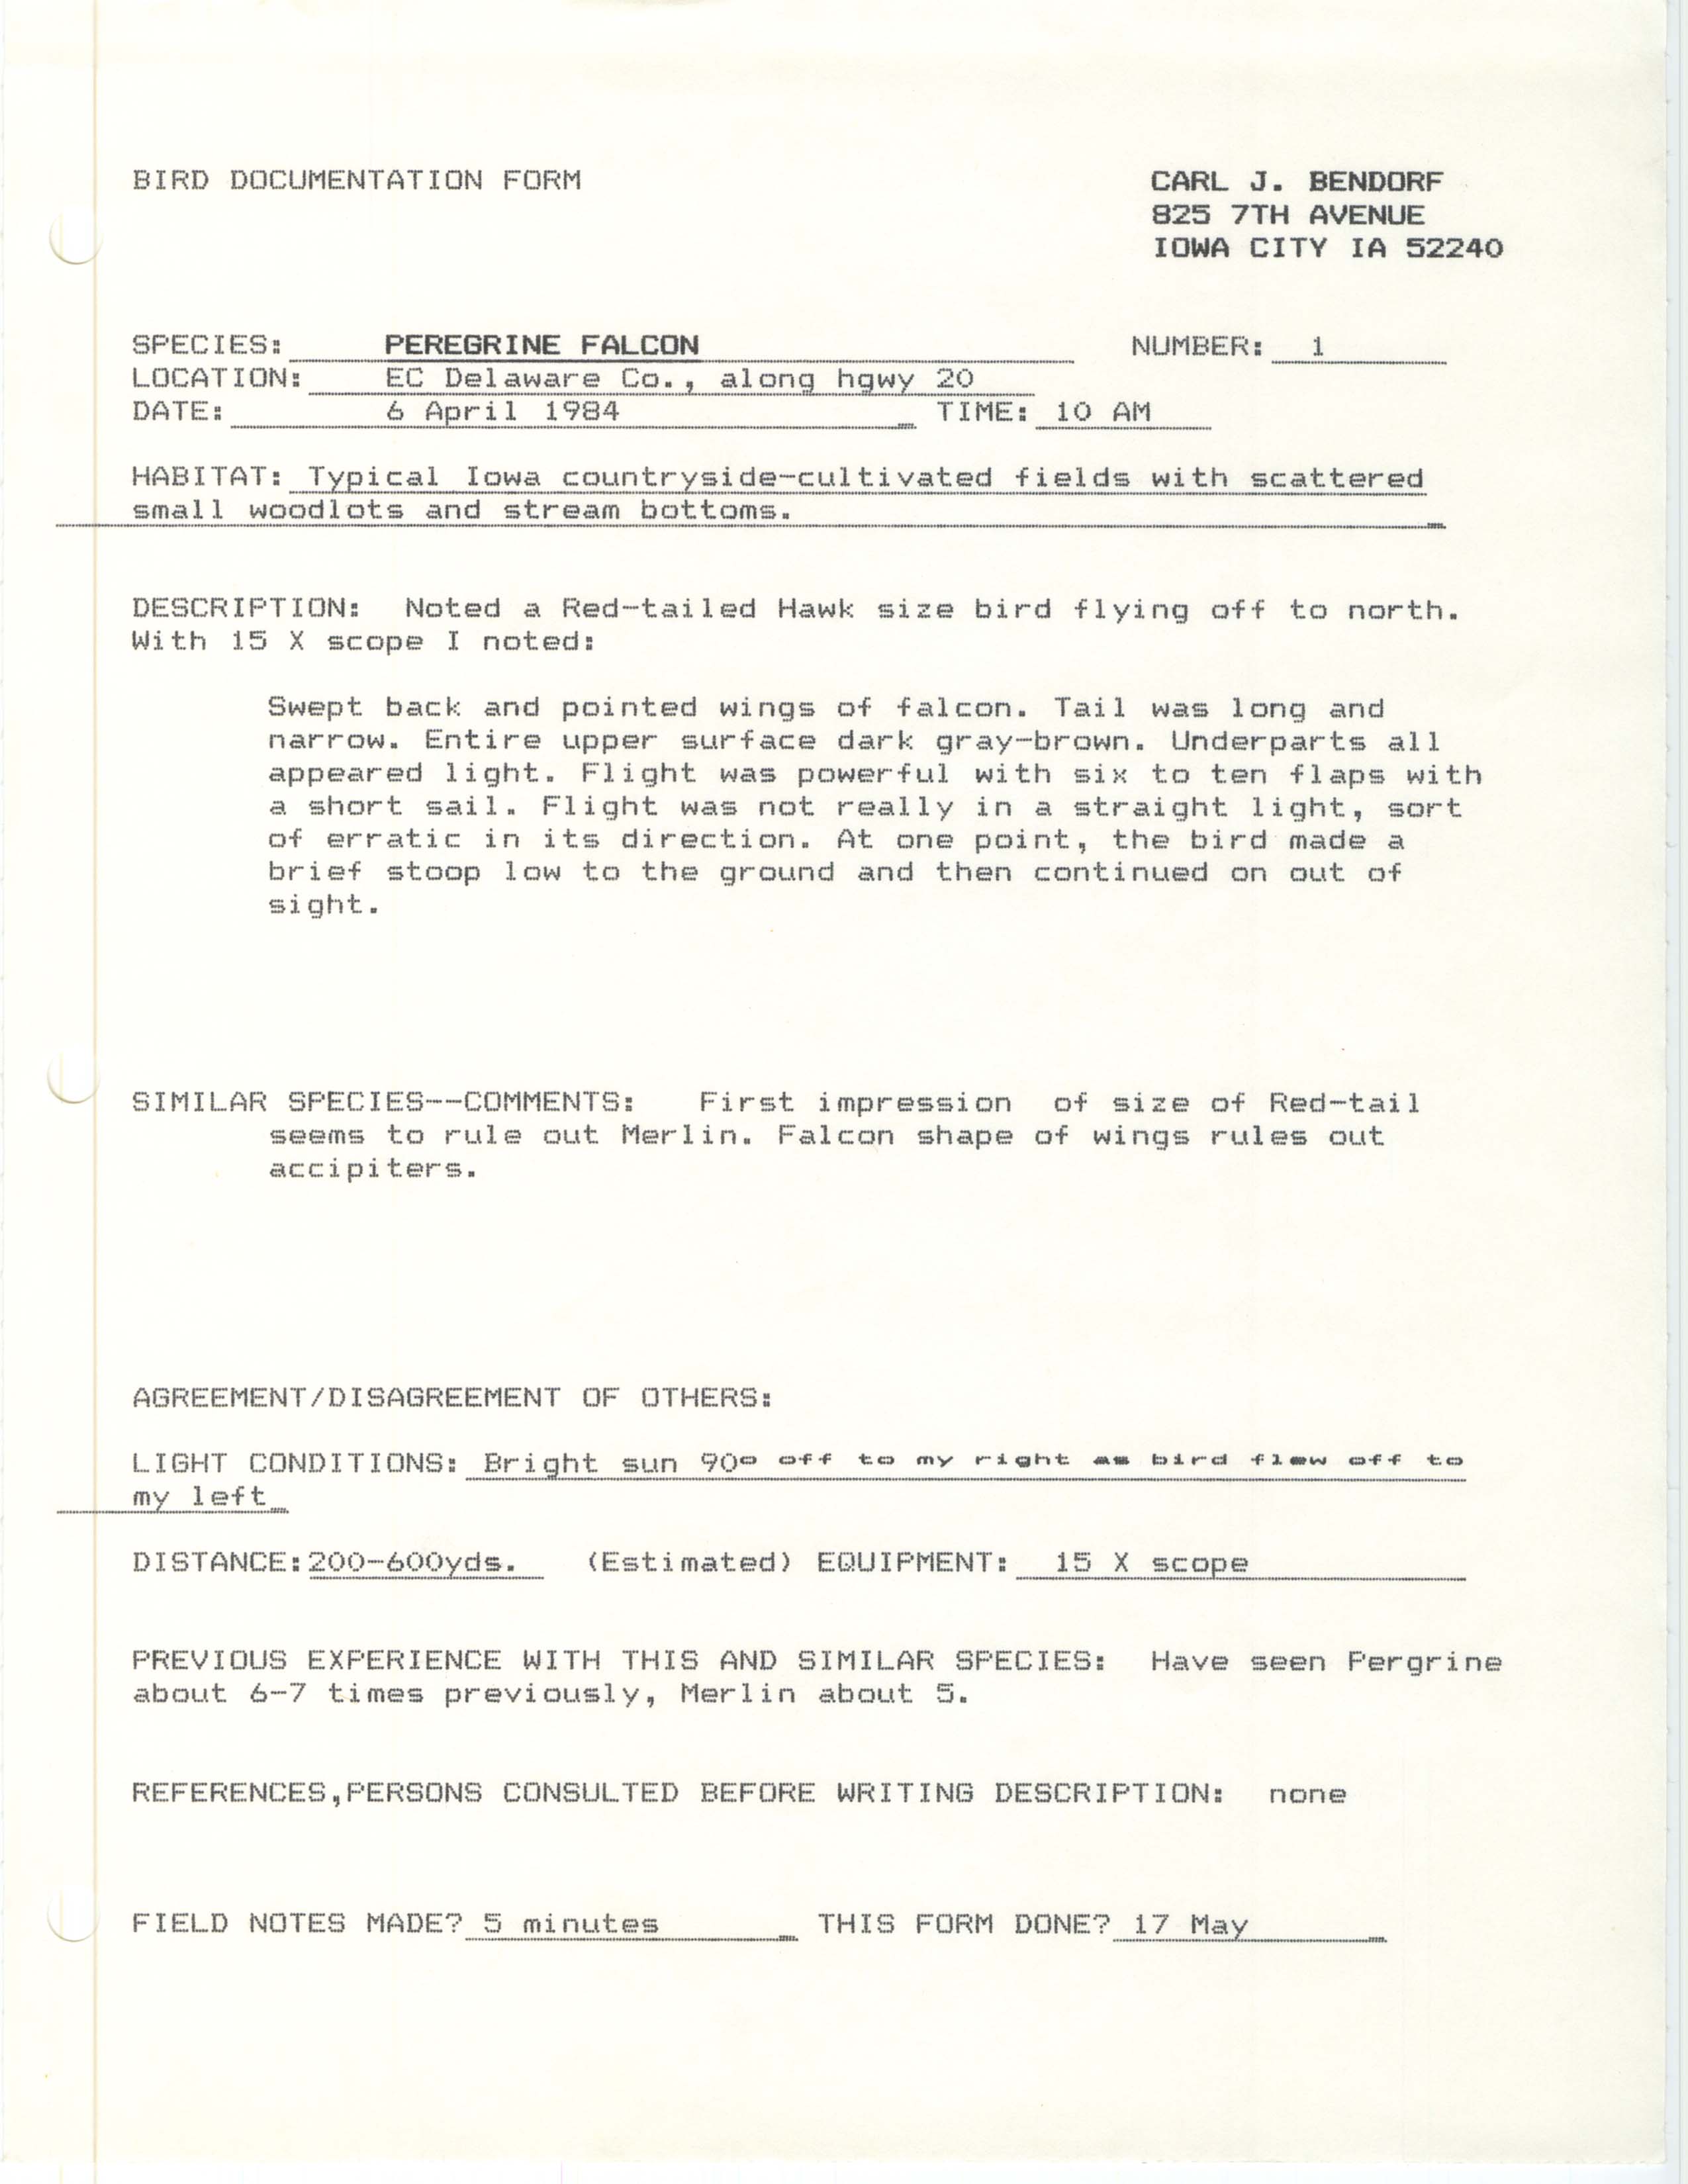 Rare bird documentation form for Peregrine Falcon in Delaware County, 1984